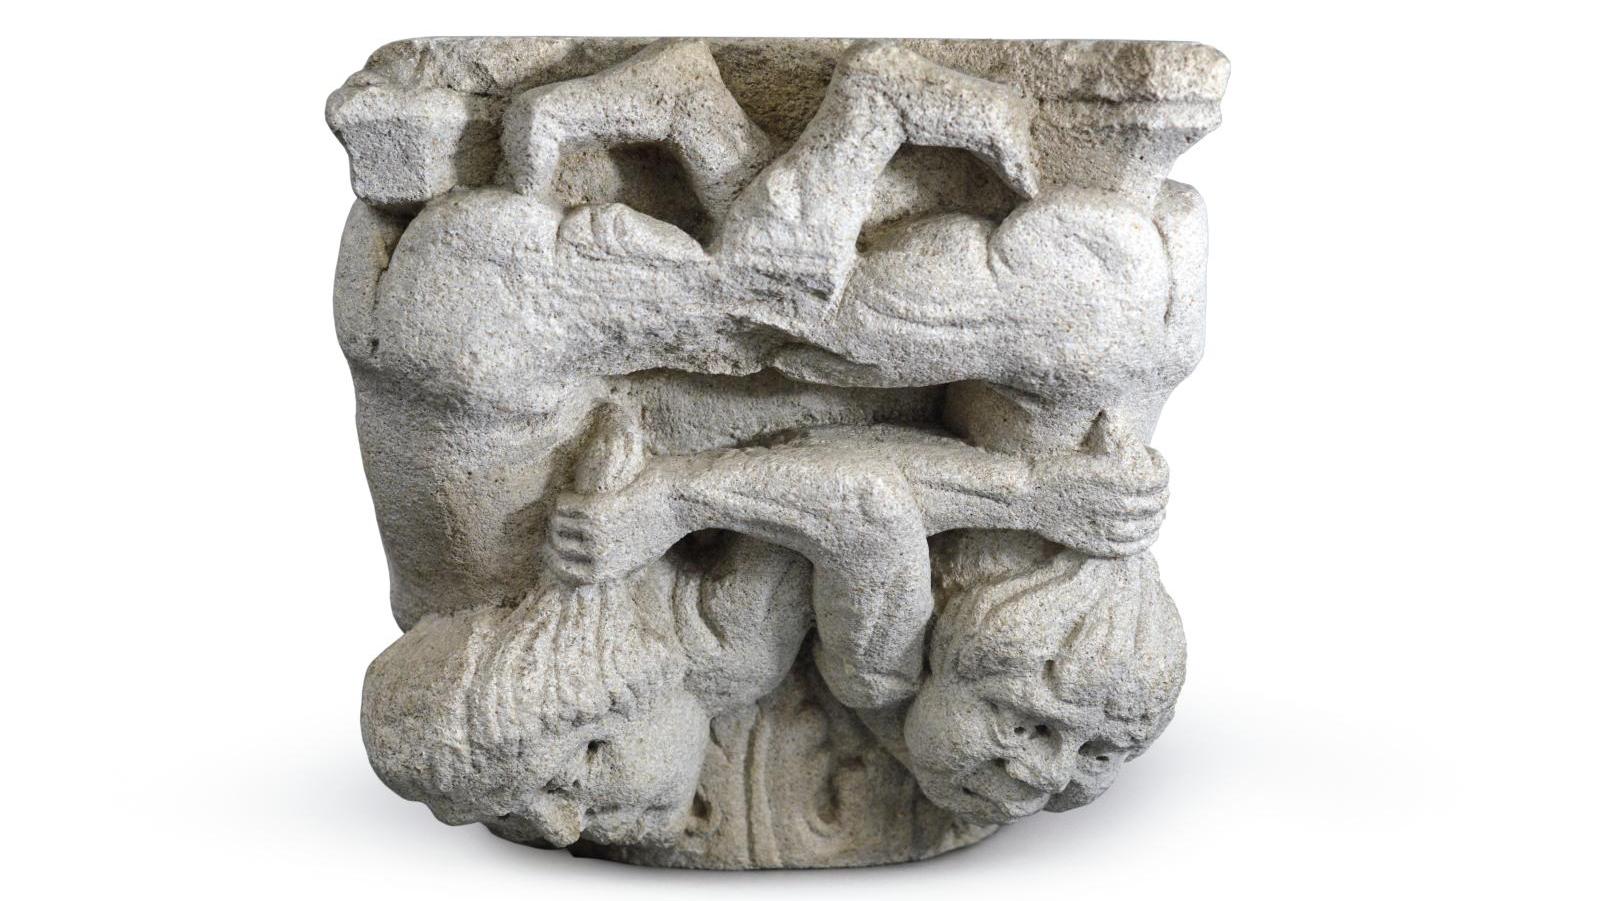 Chapiteau en pierre calcaire sculptée, à décor de feuilles d’acanthe et de deux personnages... Verve romane et kermesses flamandes